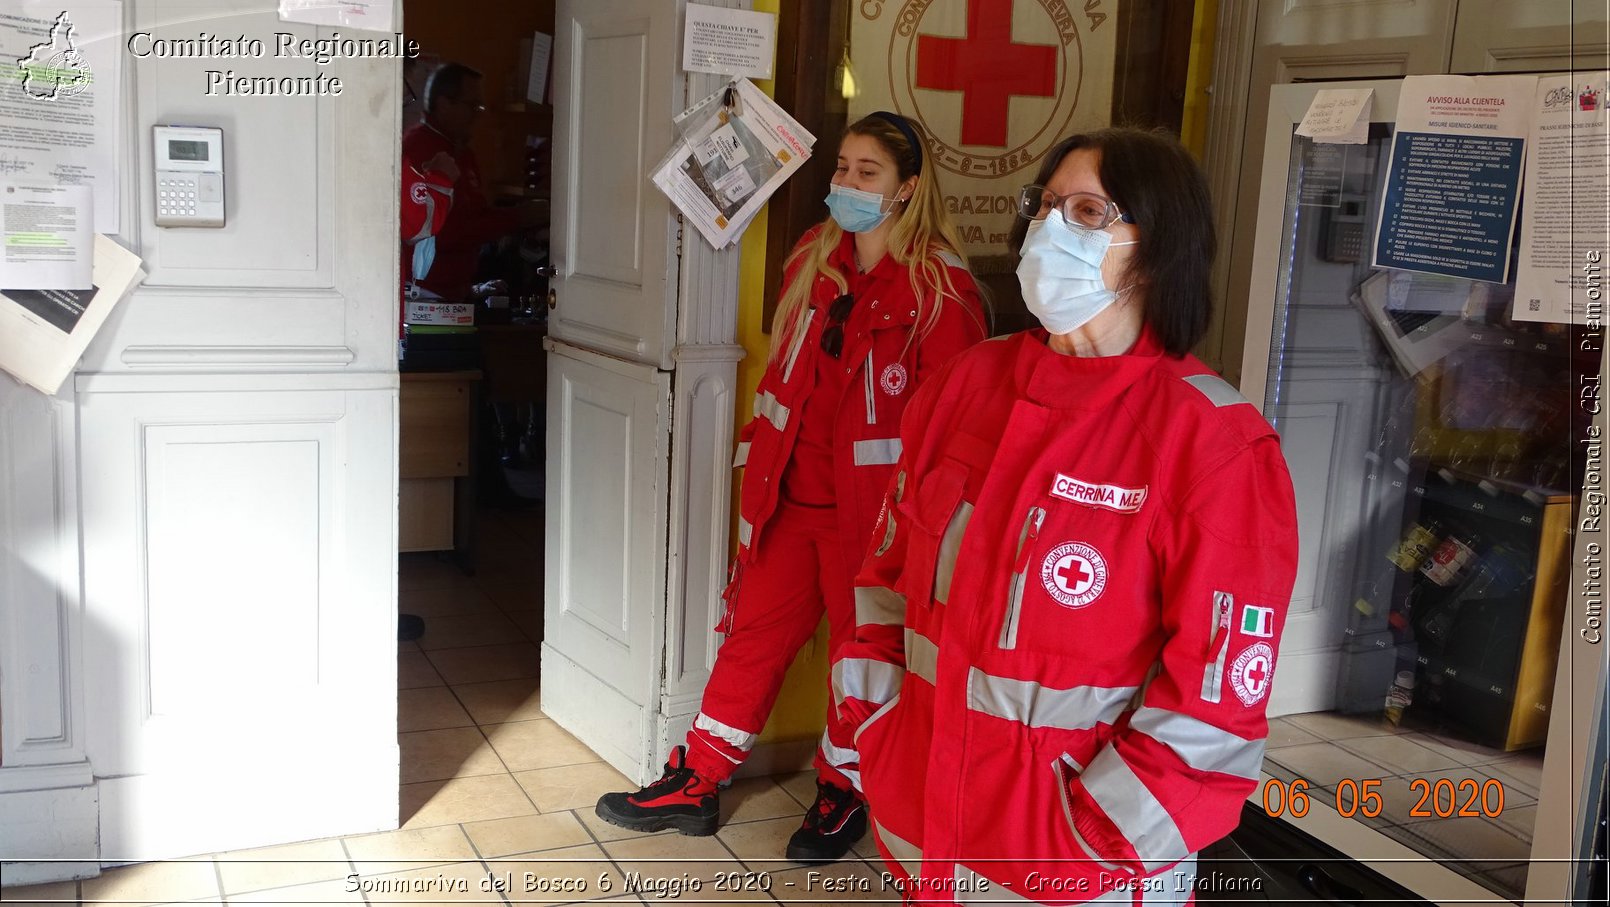 Sommariva del Bosco 6 Maggio 2020 - Festa Patronale - Croce Rossa Italiana